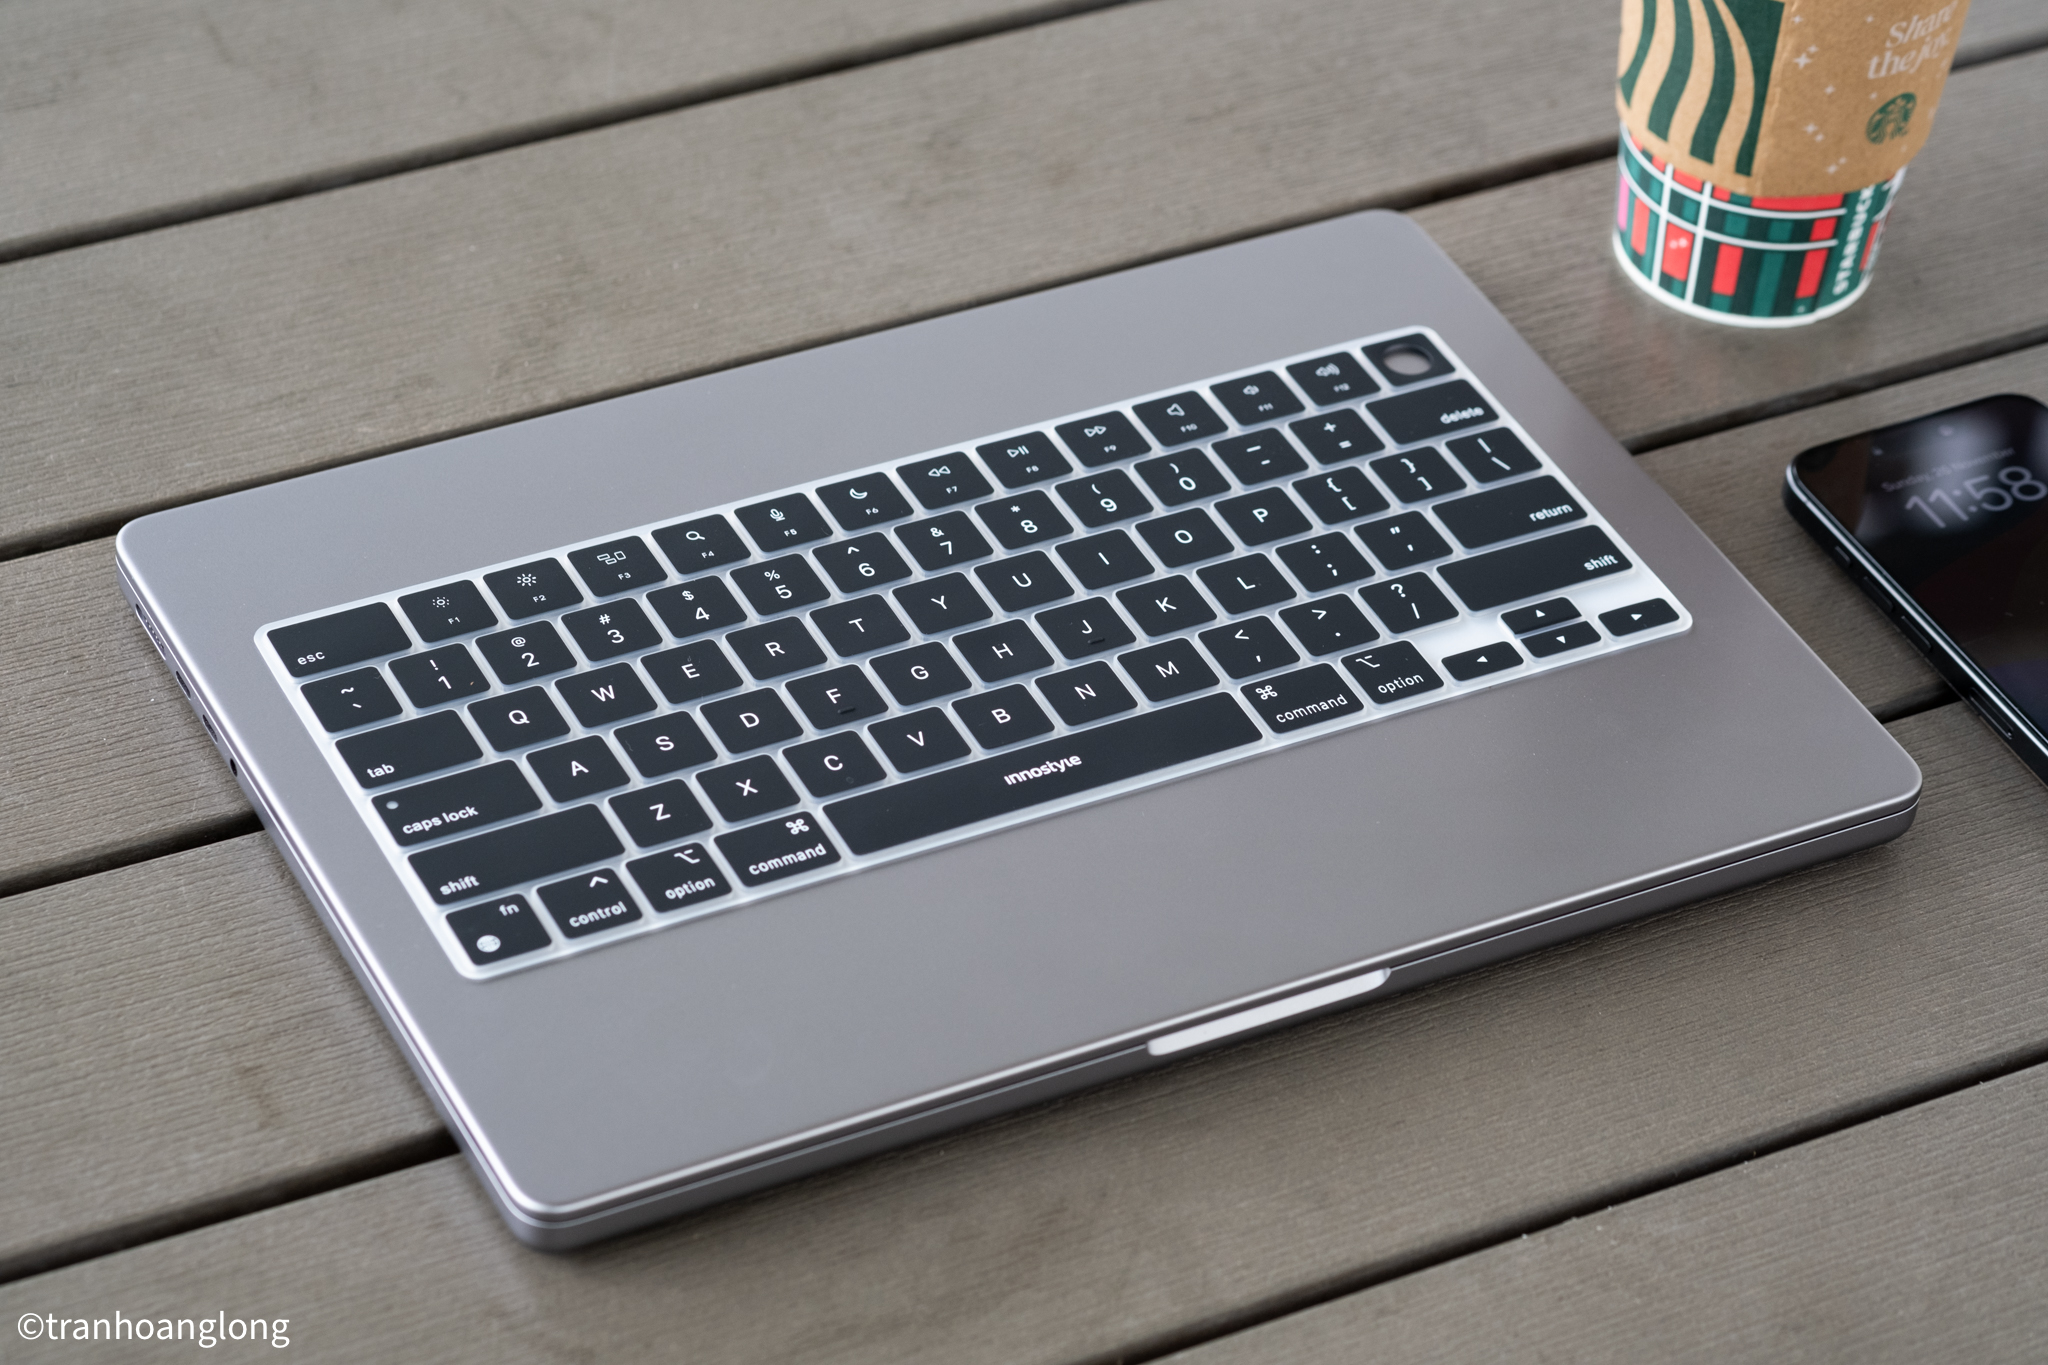 Trên tay tấm silicon phủ bàn phím Macbook Pro: Một món phụ kiện gây nhiều tranh cãi